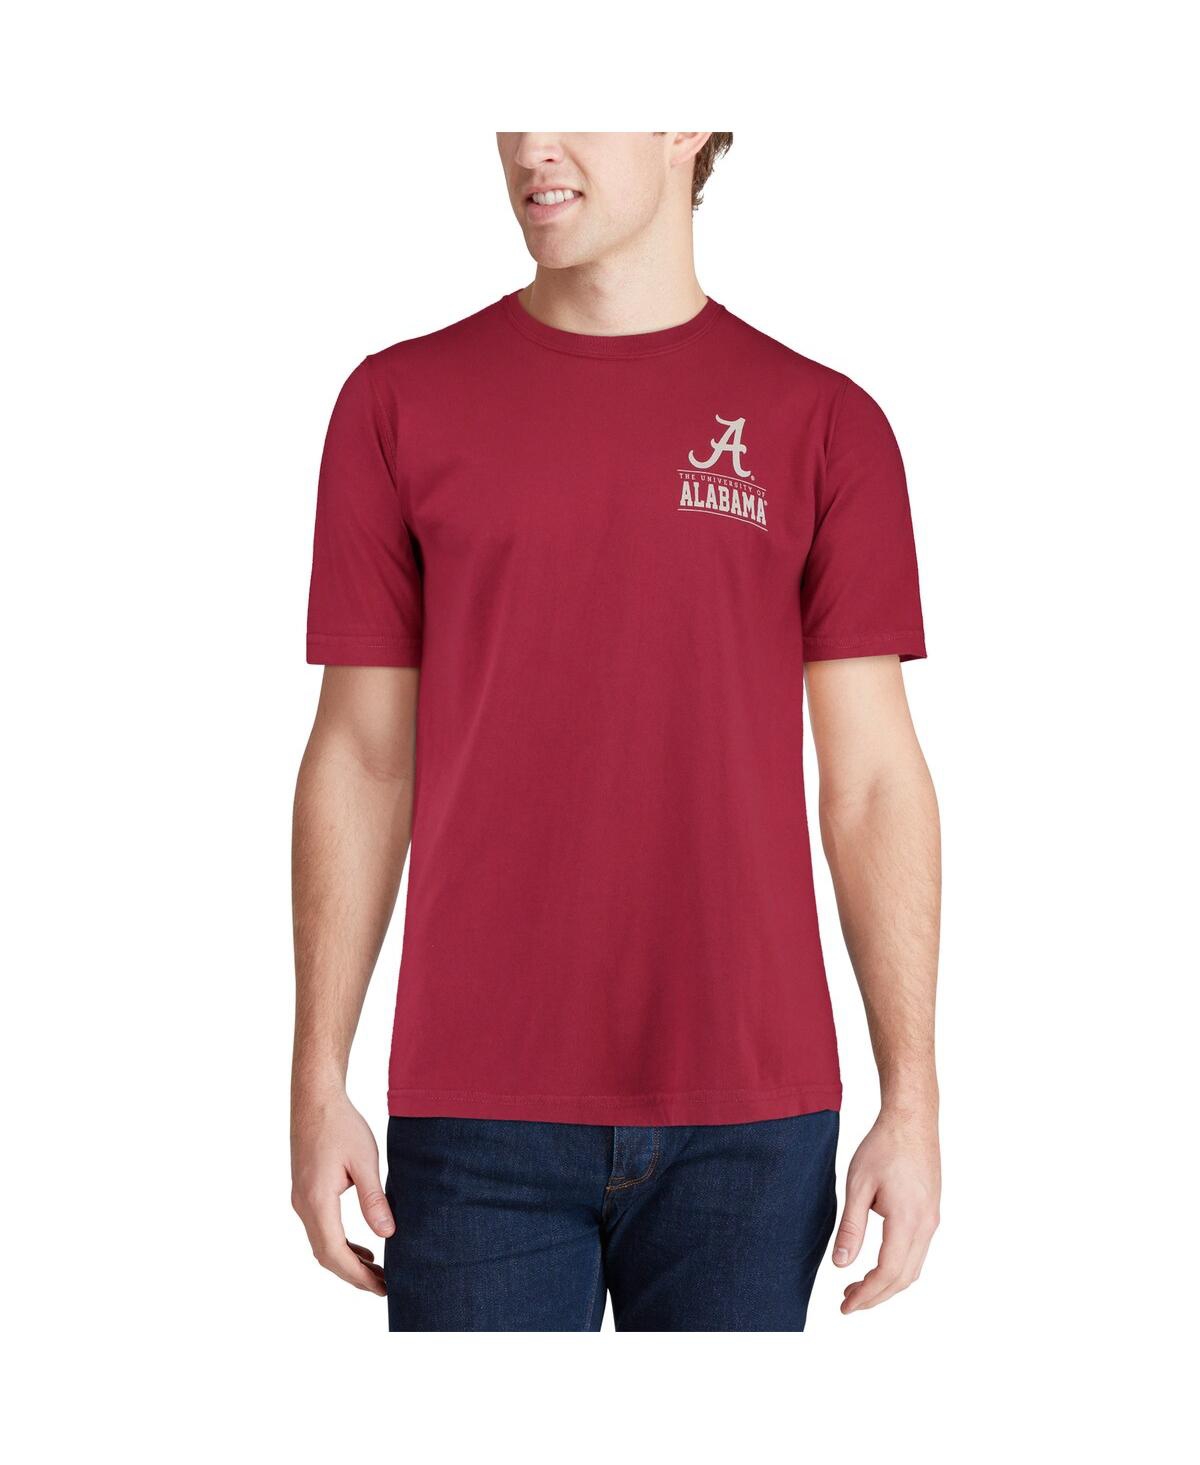 Shop Image One Men's Crimson Alabama Crimson Tide Comfort Colors Campus Icon T-shirt